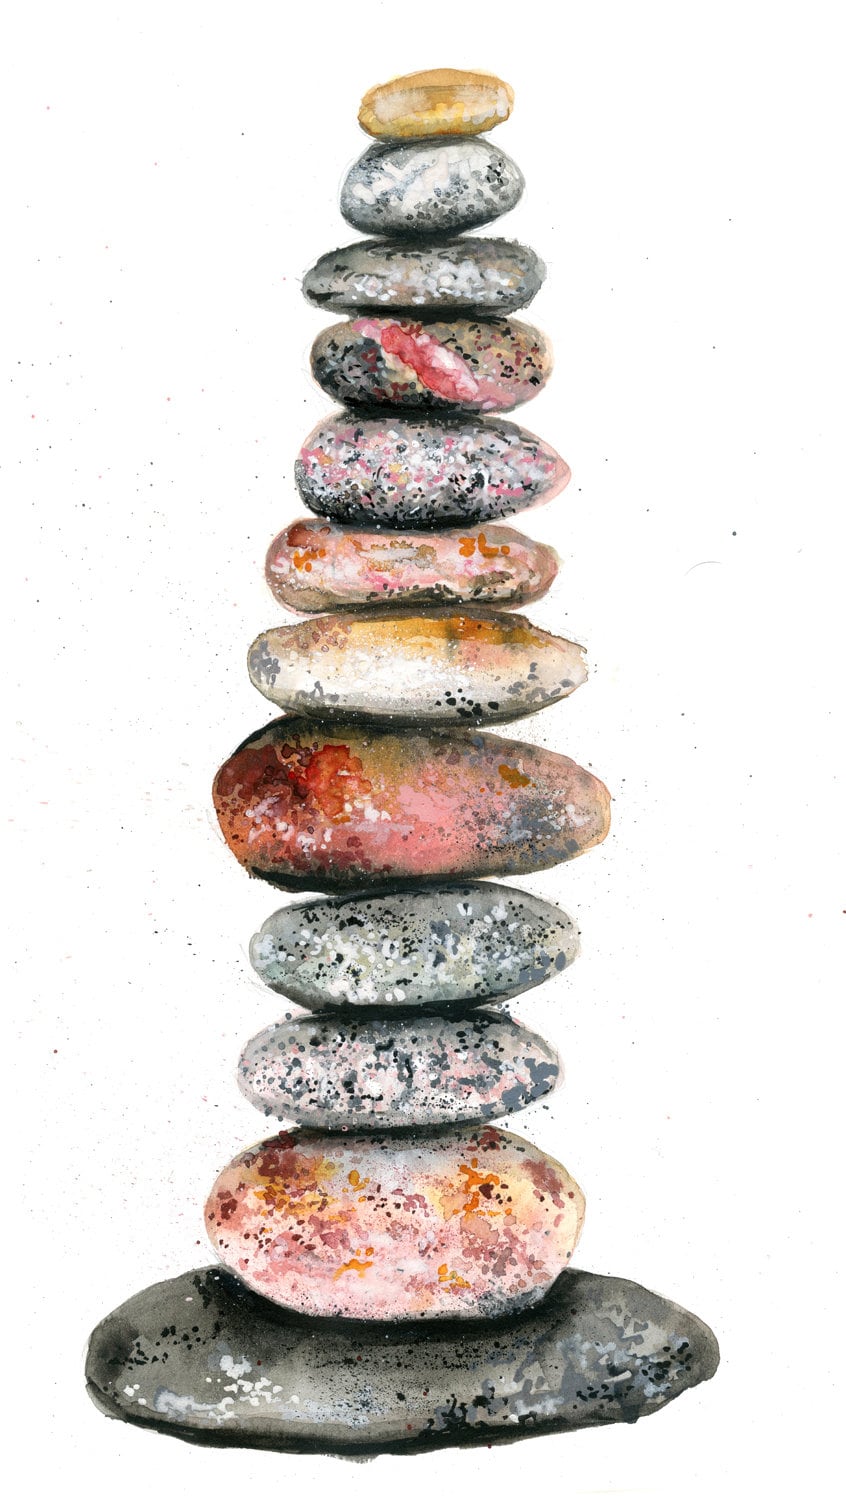 Living stones IV - fine art giclee print